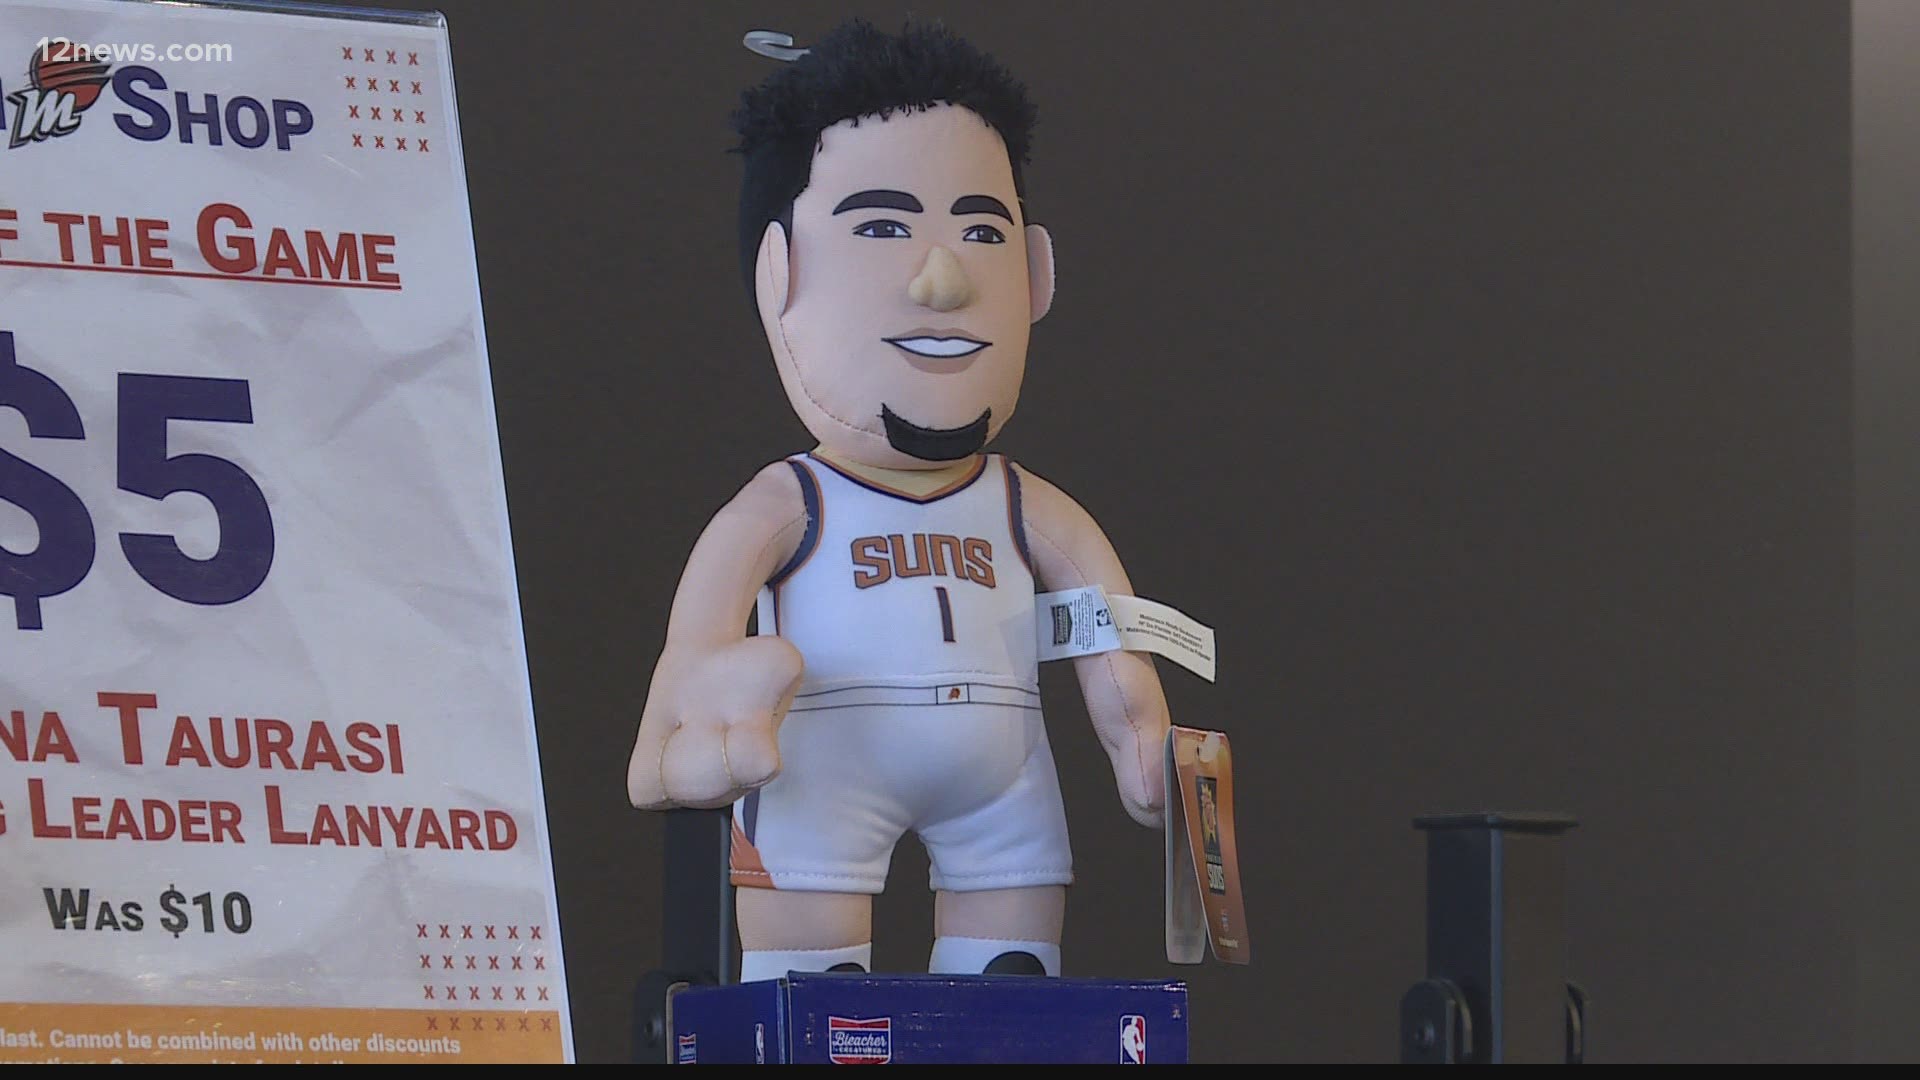 Phoenix Suns Team Shop in NBA Fan Shop 